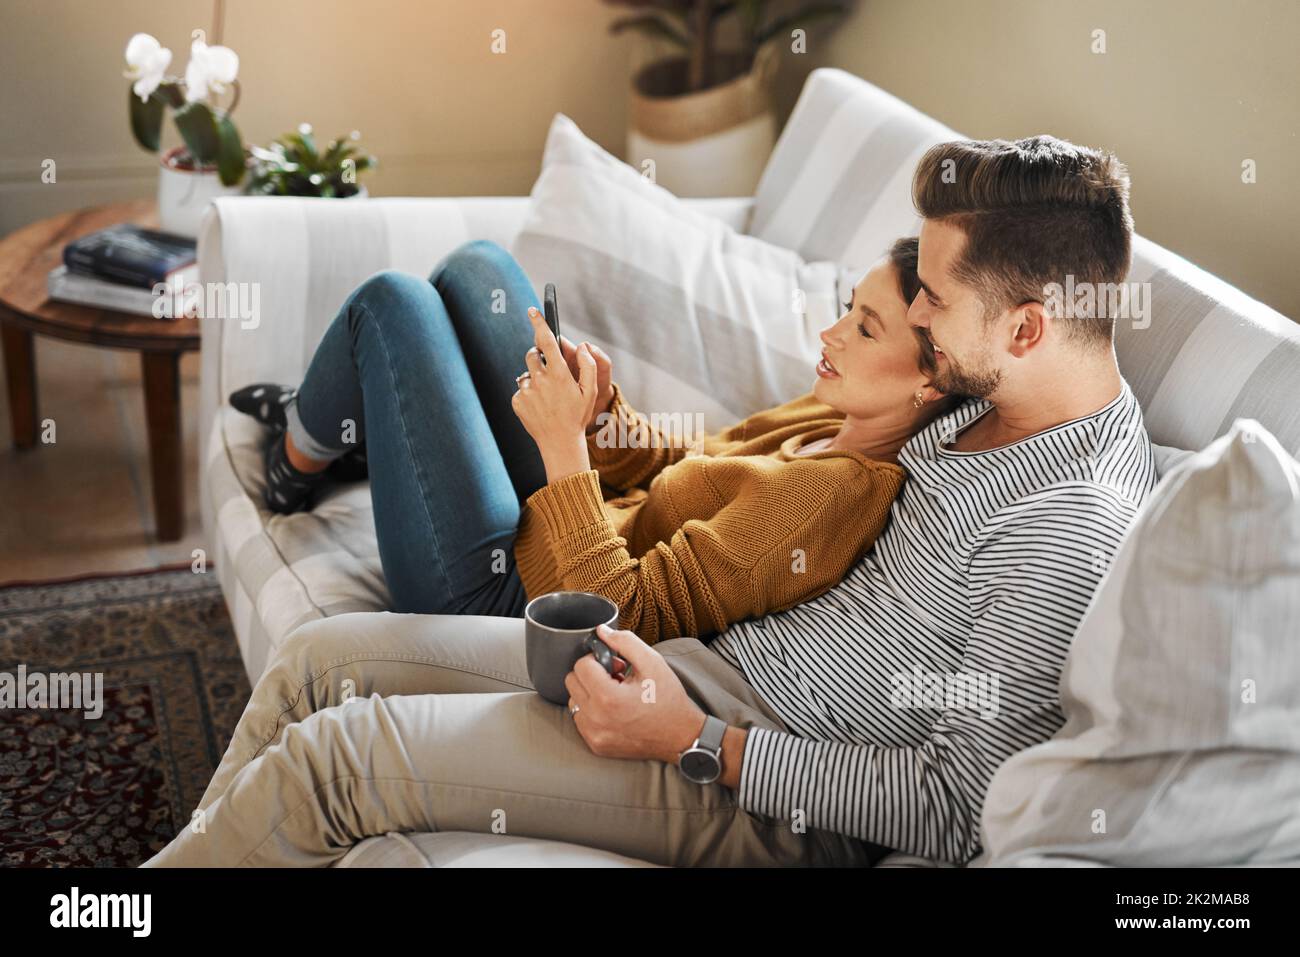 Sehen wir uns an, welche Sendungen in den sozialen Medien Trend sind. Aufnahme eines jungen Paares, das ein Mobiltelefon benutzt, während es sich auf dem Sofa zu Hause entspannt. Stockfoto